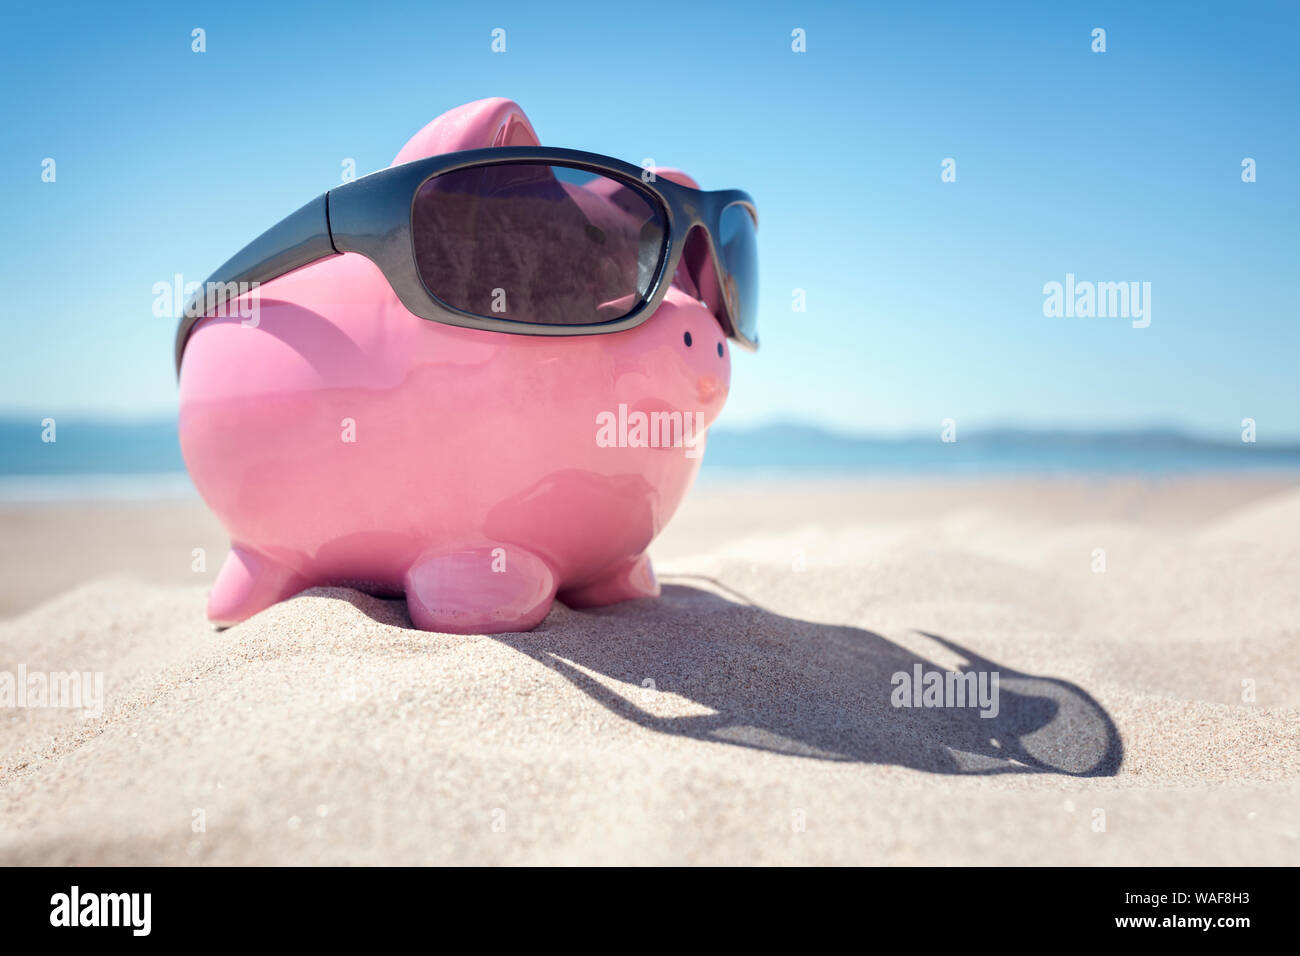 Tirelire avec des lunettes de soleil sur la plage au bord de la mer en été Banque D'Images